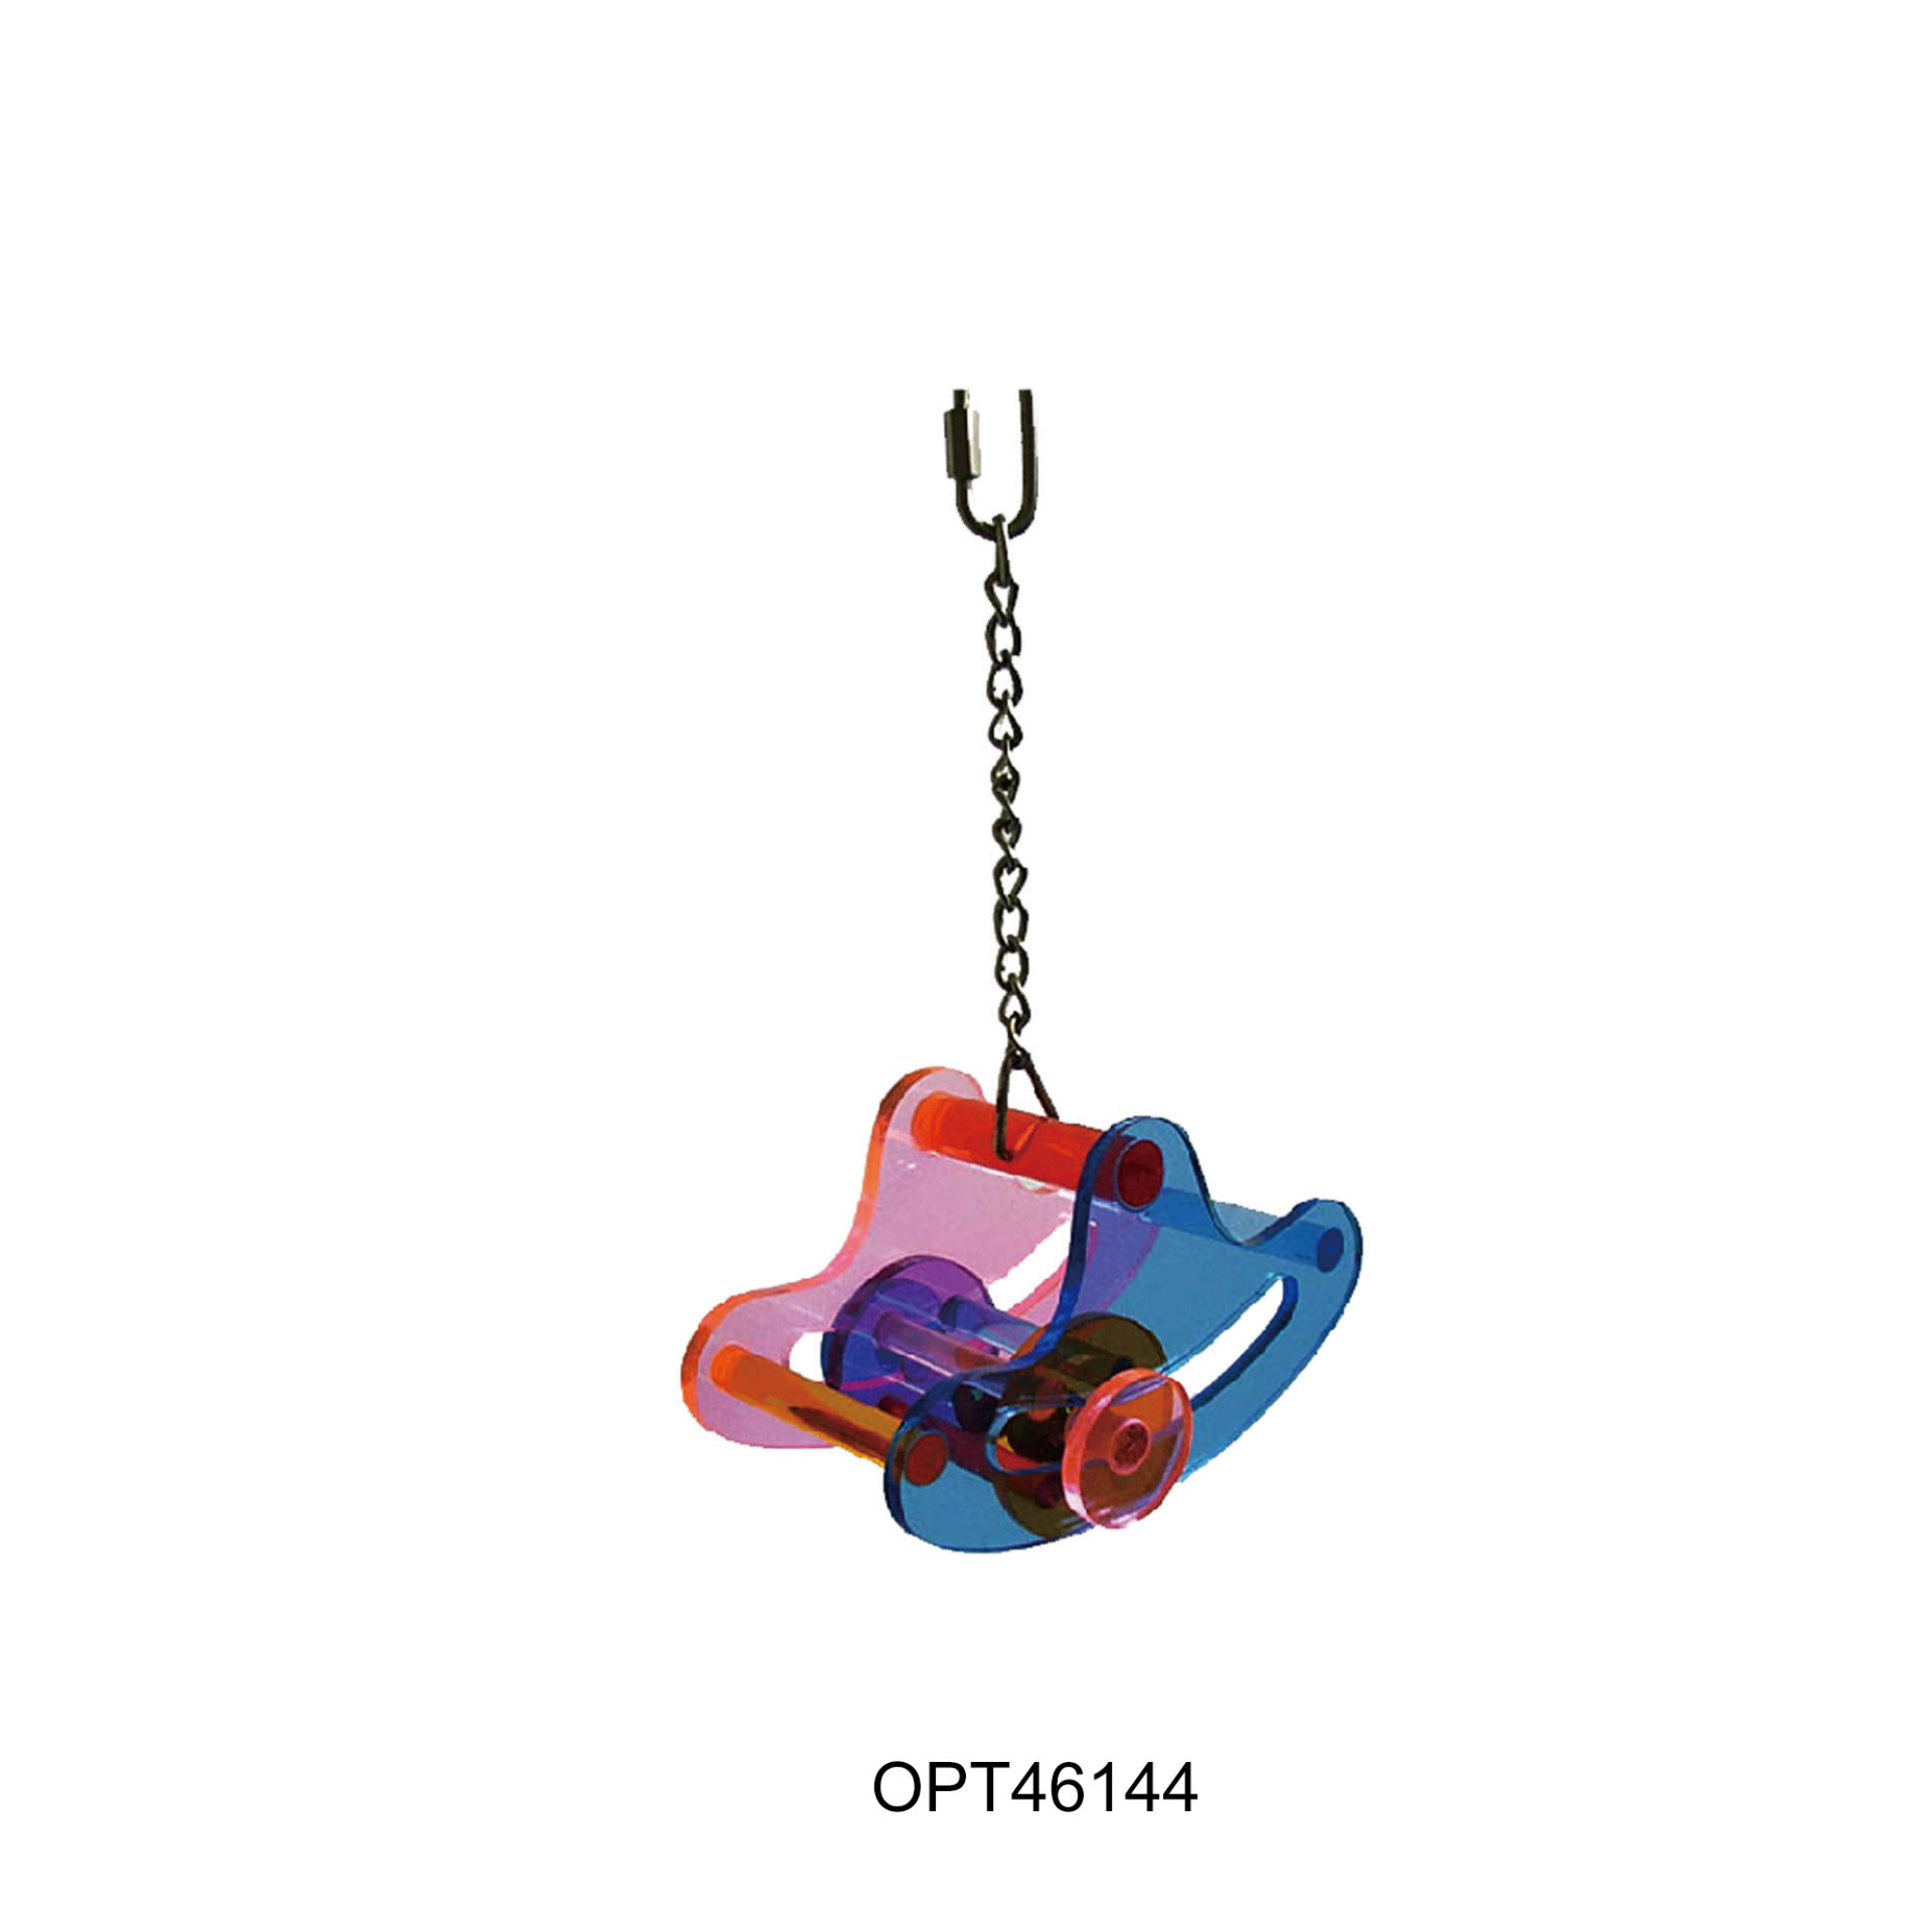 Opsp - 46144 - Bird Toy 25x15cm